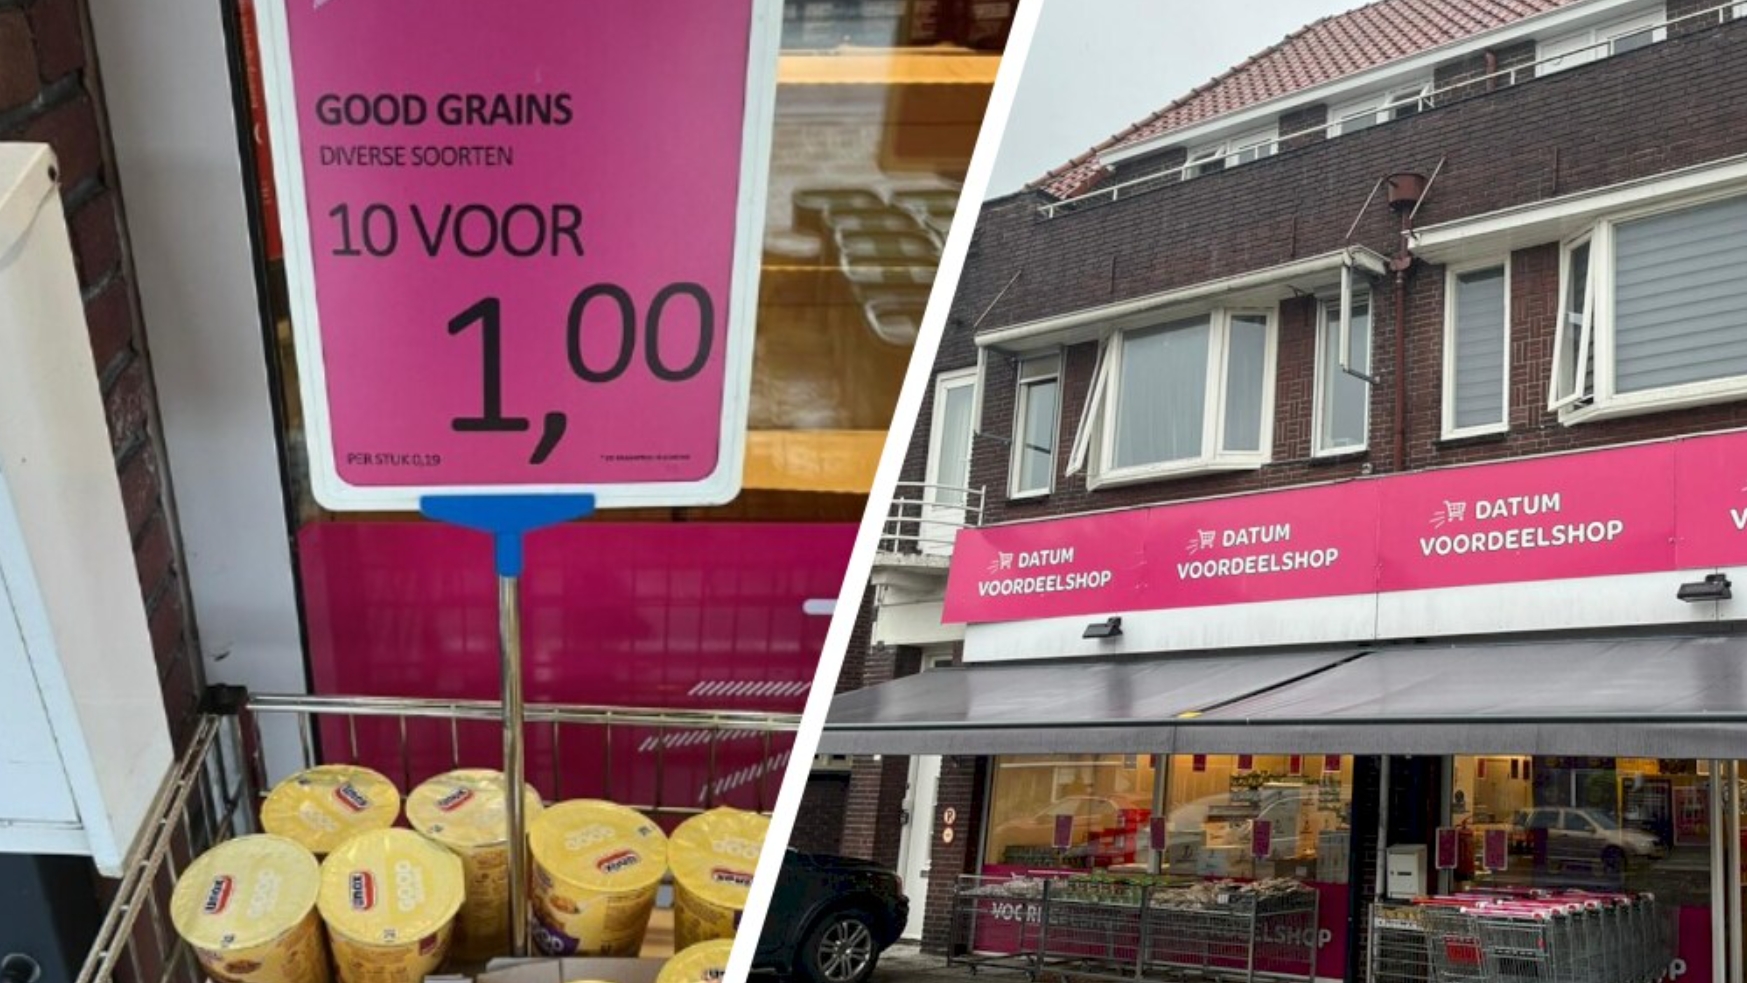 "过期超市"越来越受到欢迎，专家鼓励在家上班低碳出行，荷兰将面临经济收缩…